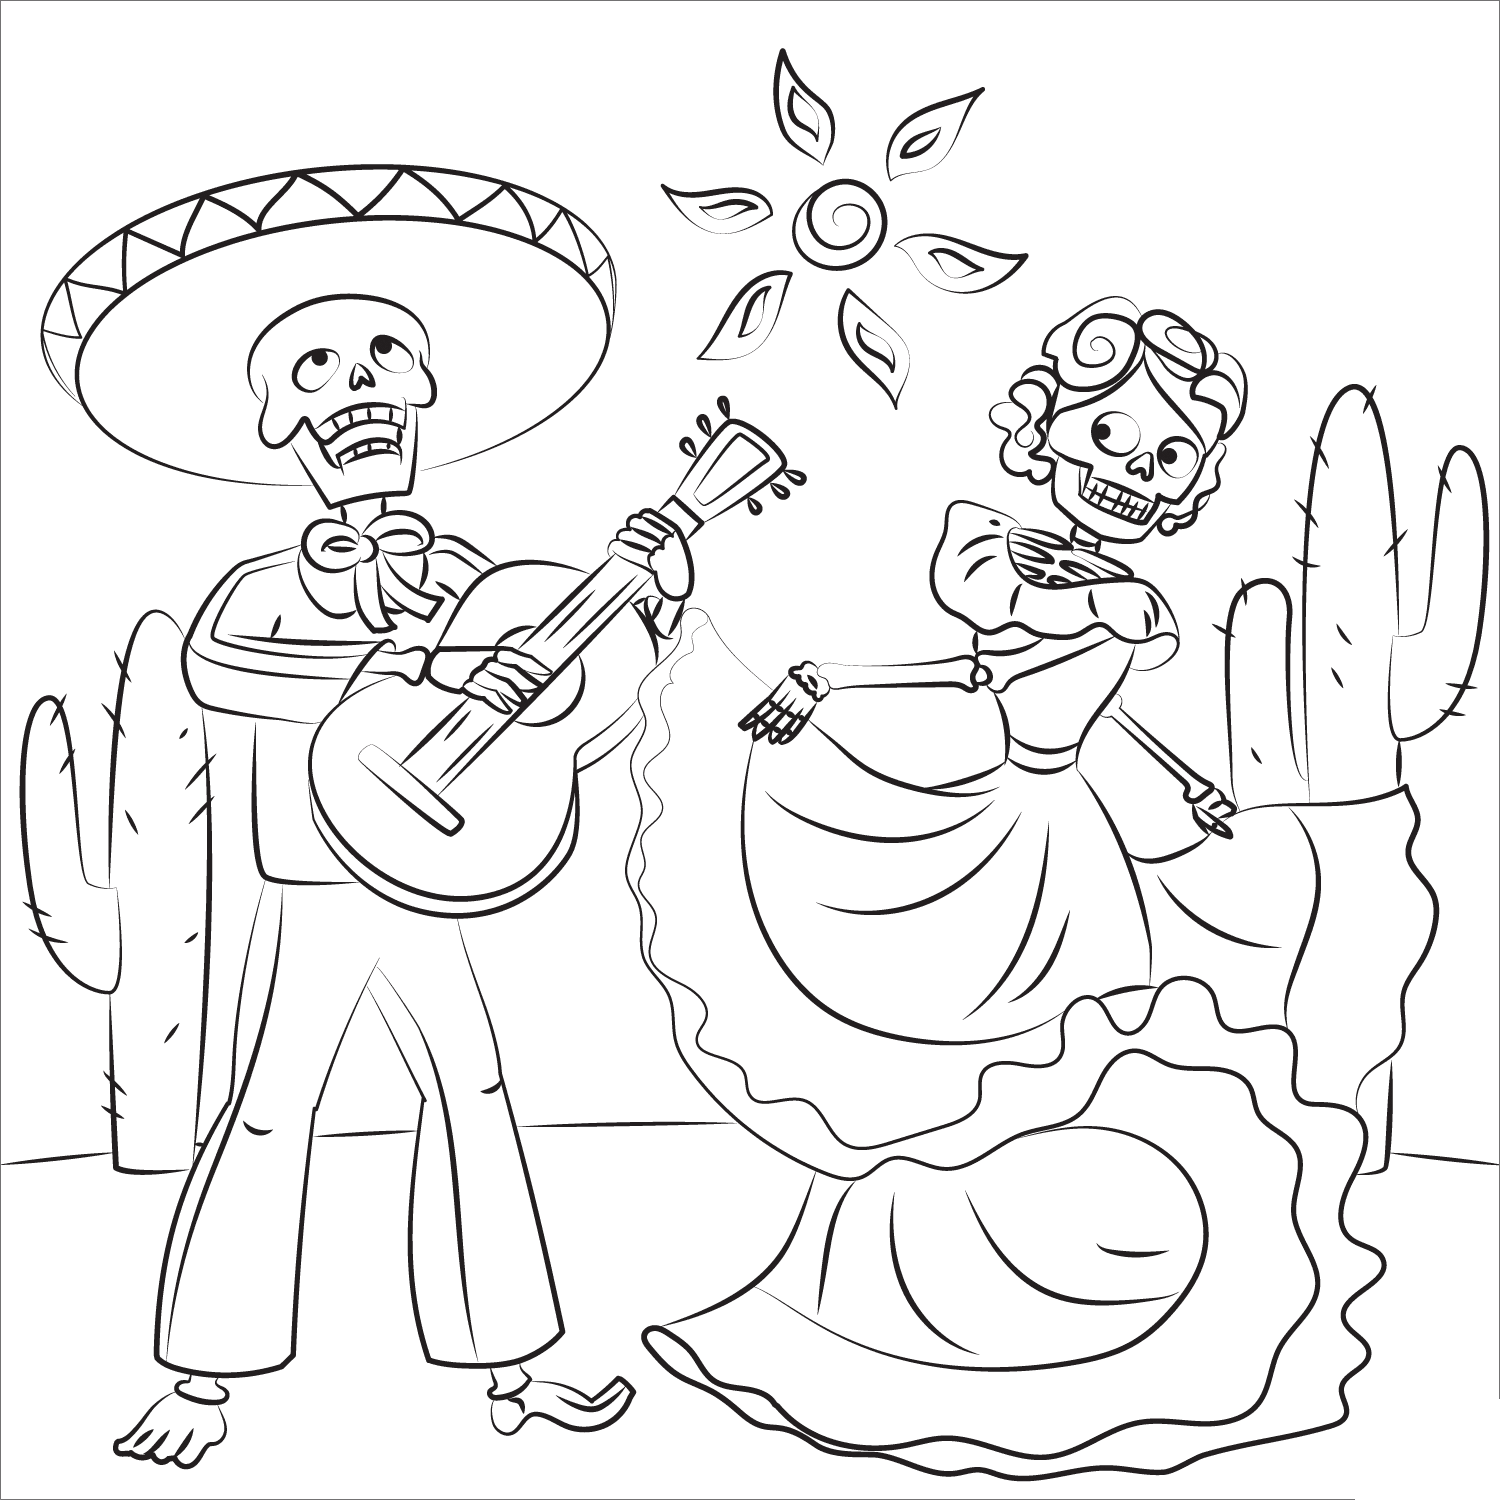 Esqueleto tocando guitarra e mulher esqueleto dançando em Day Of The Dead